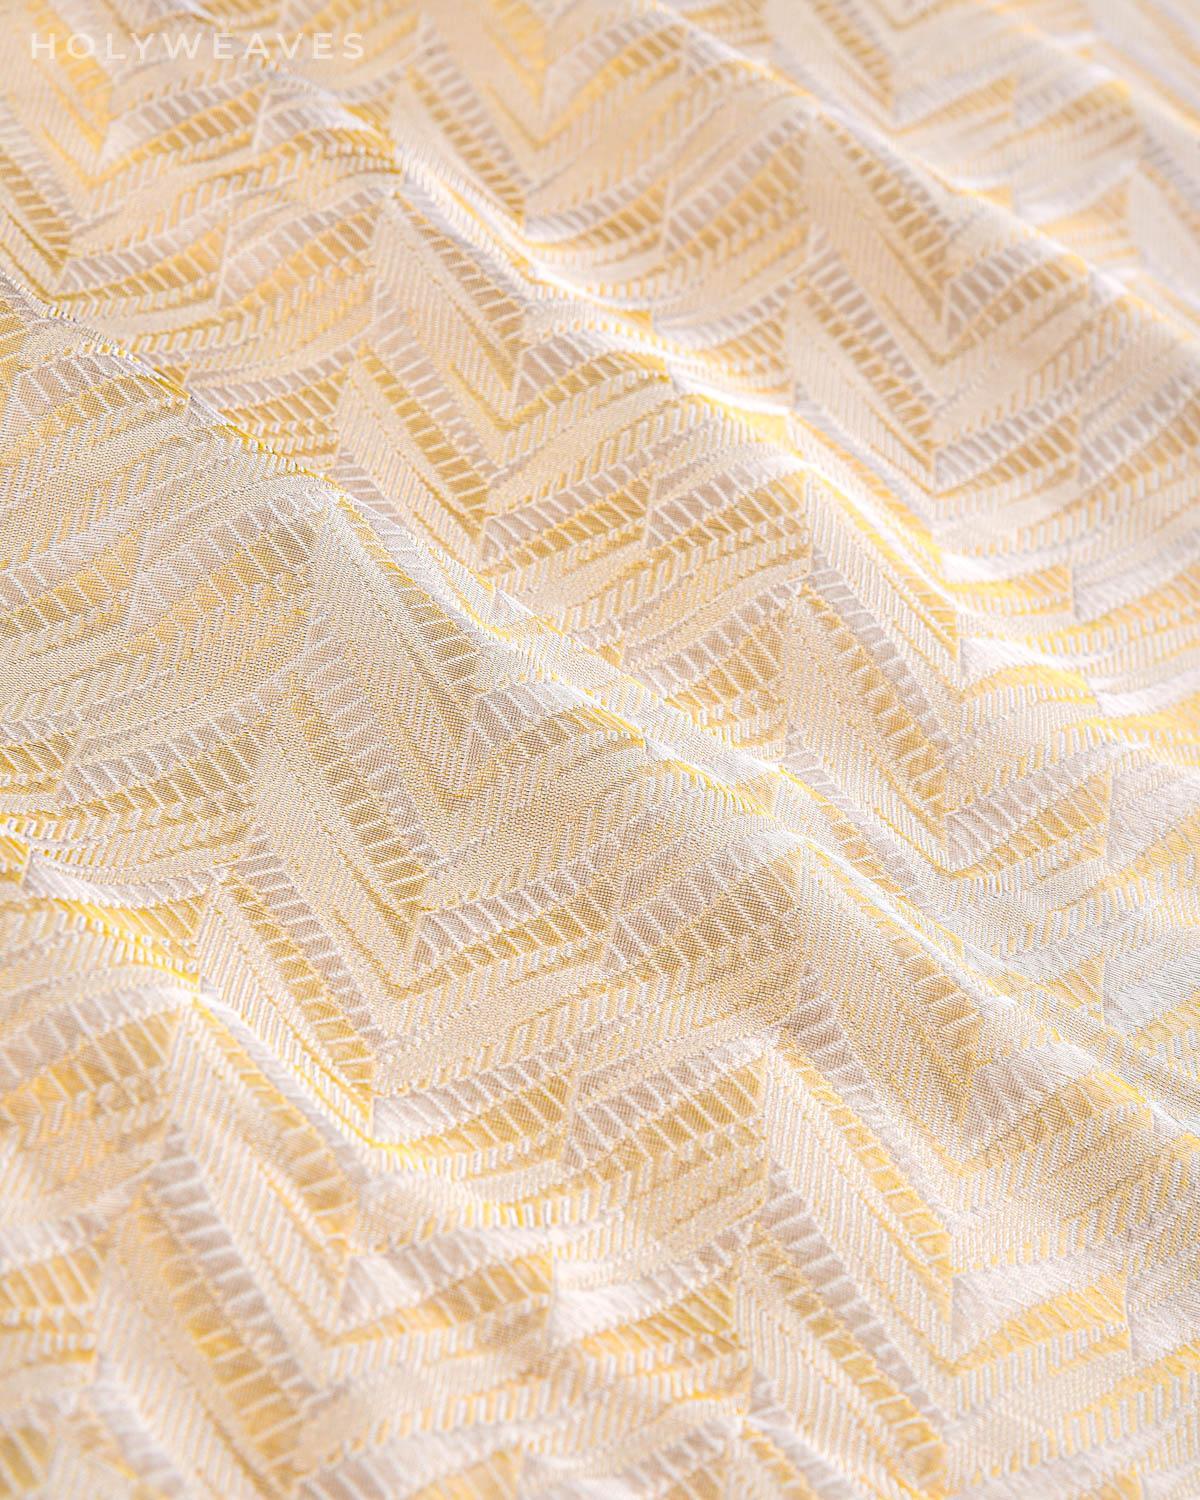 Cream Banarasi Arrowhead Herring Bone Alfi Sona Rupa Handwoven Katan Silk Fabric - By HolyWeaves, Benares